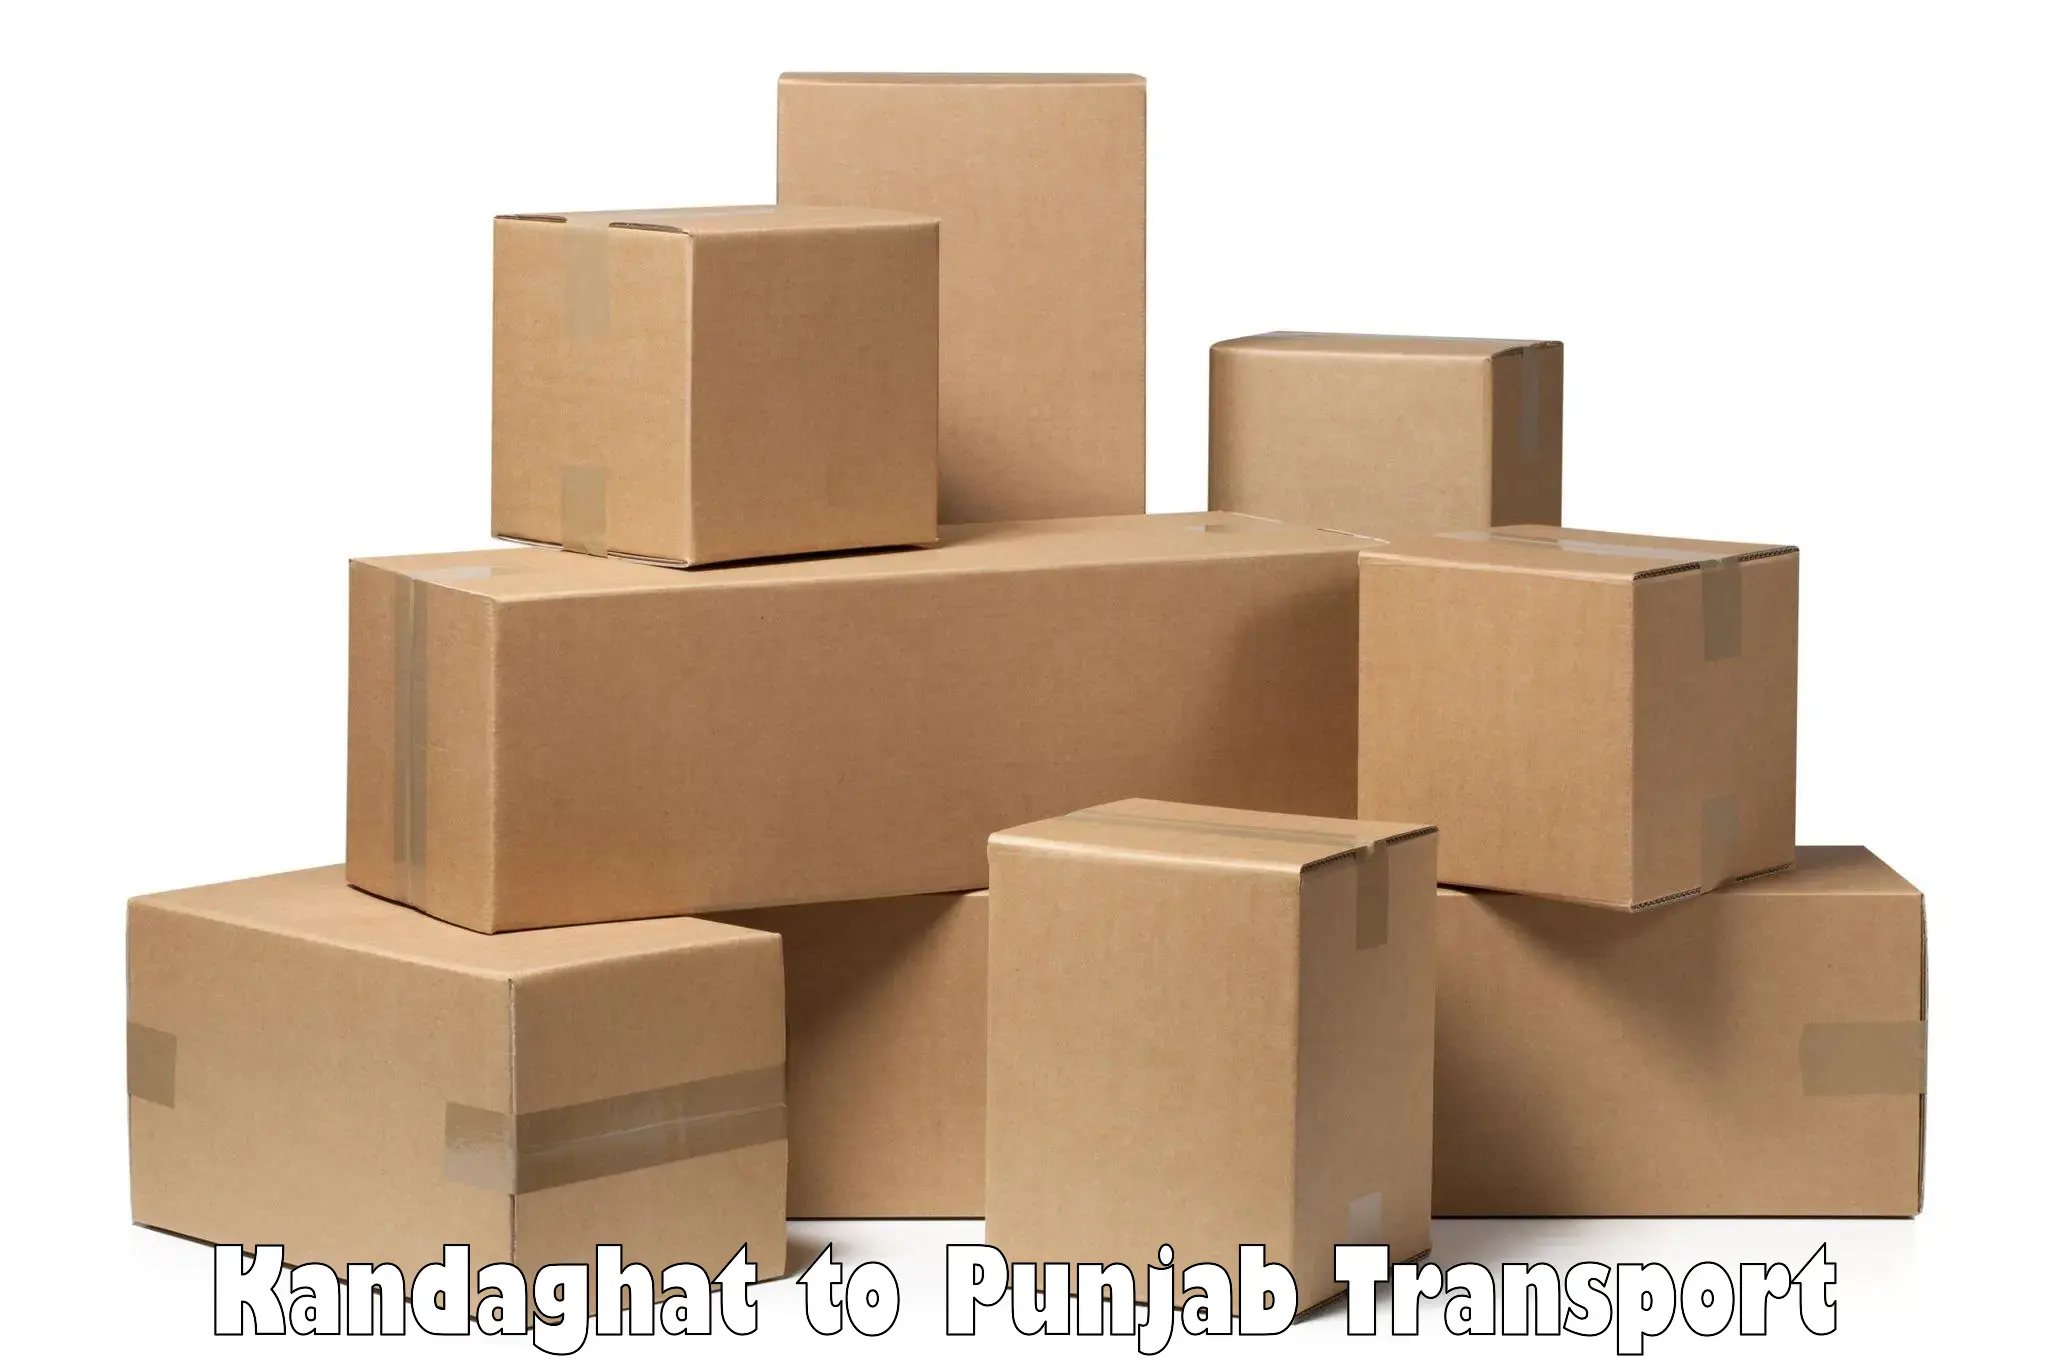 Daily parcel service transport in Kandaghat to Jalandhar